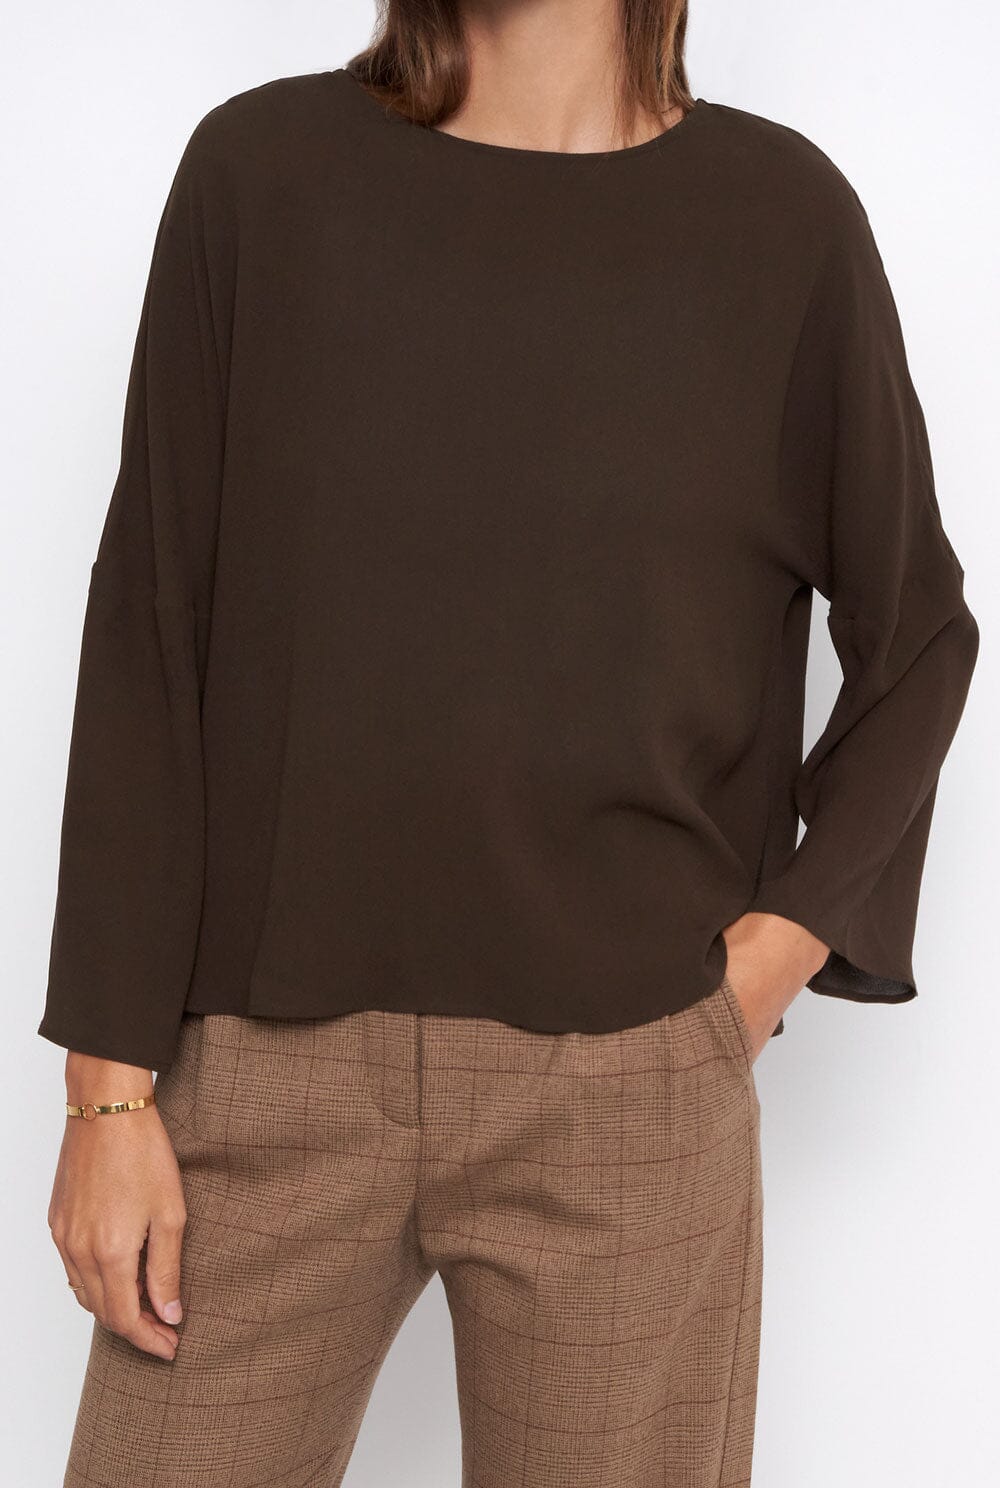 Lea brown Silk blouse Shirts & blouses Atelier Aletheia 